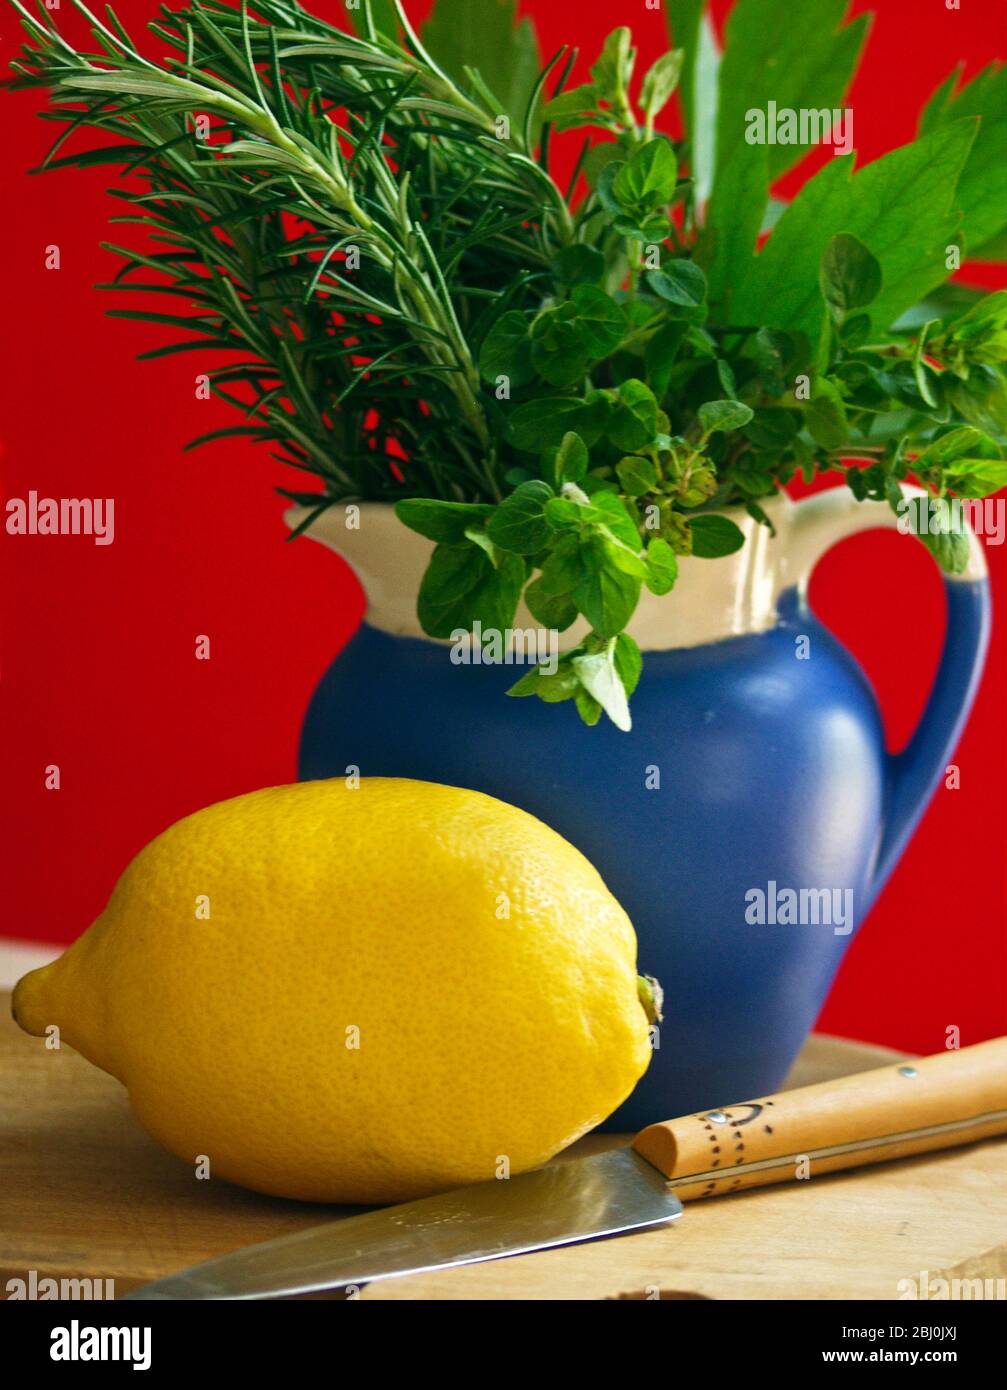 Zitrone auf Schneidebrett mit Messer und Bund gemischter Gartenkräuter in blauem Krug vor rotem Hintergrund - Stockfoto